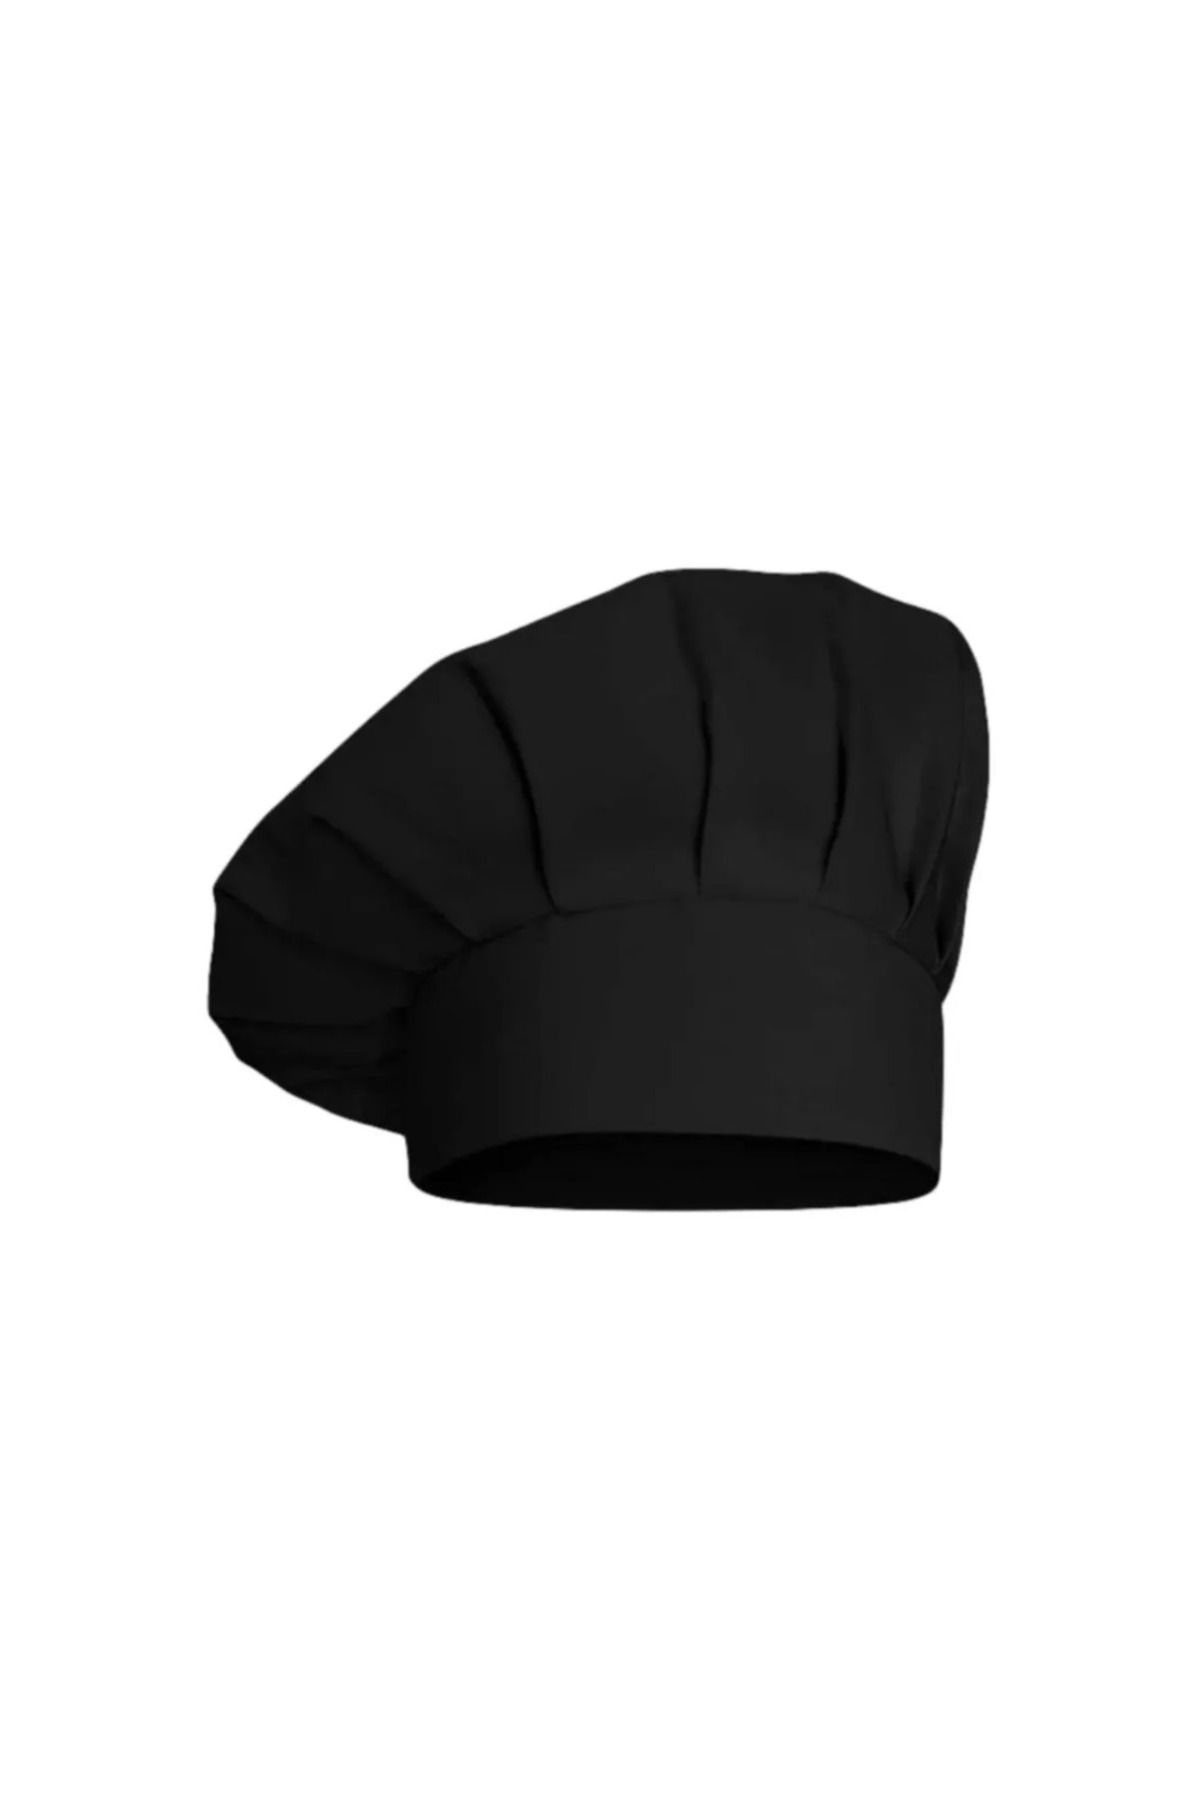 İsra Aşçı Şapkası , Aşçı Kepi, Mantar Kep, Mutfak Şapkası